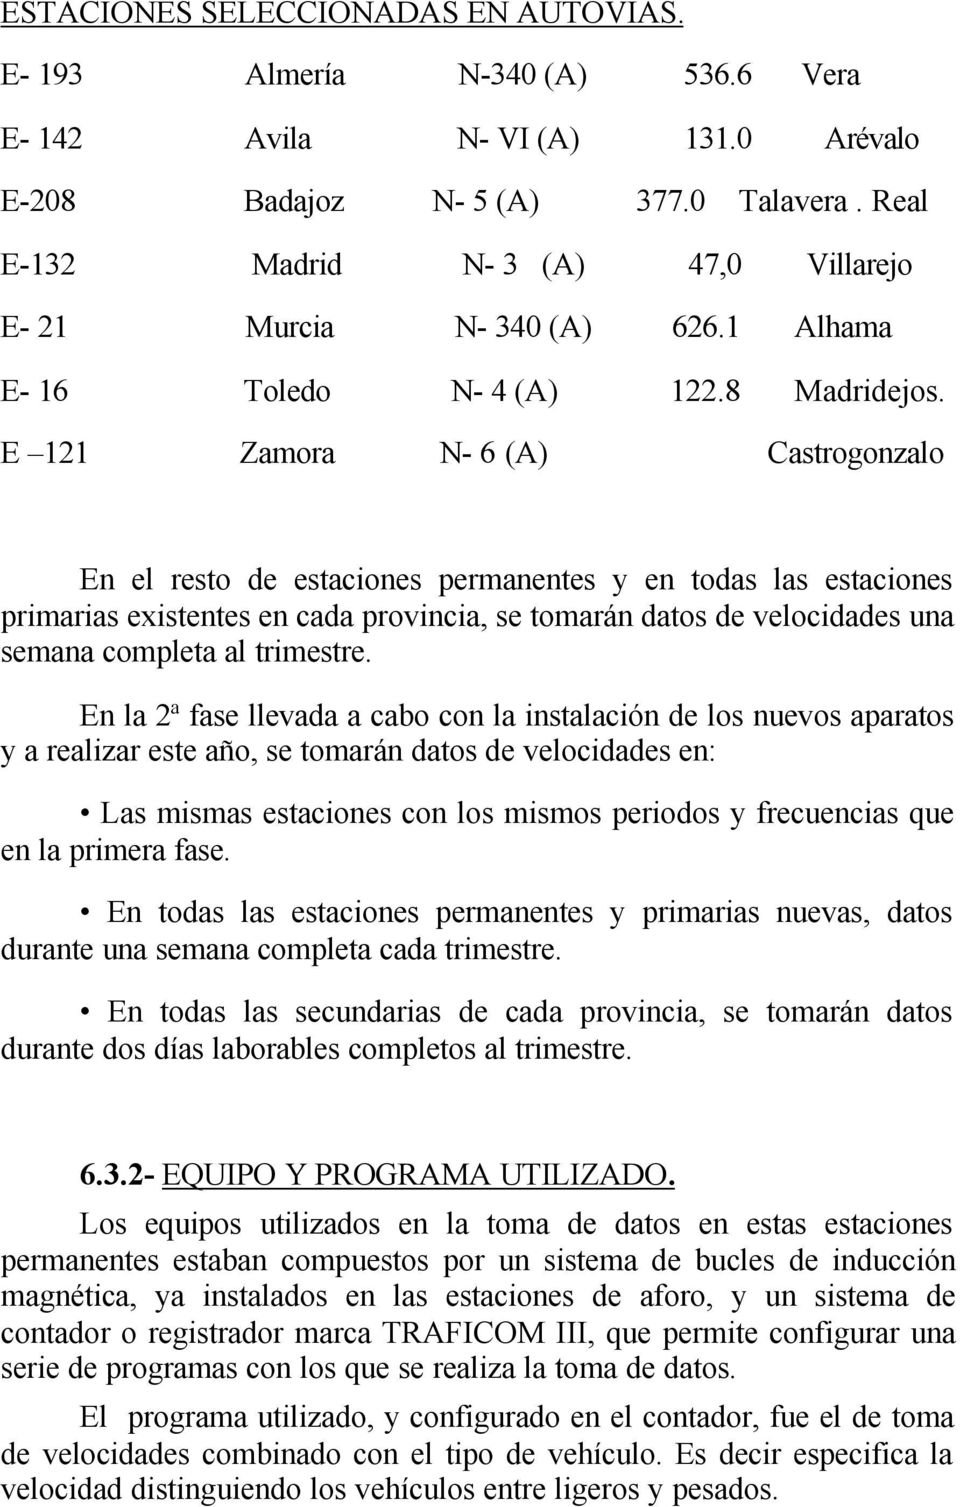 E 121 Zamora N- 6 (A) Castrogonzalo En el resto de estaciones permanentes y en todas las estaciones primarias existentes en cada provincia, se tomarán datos de velocidades una semana completa al